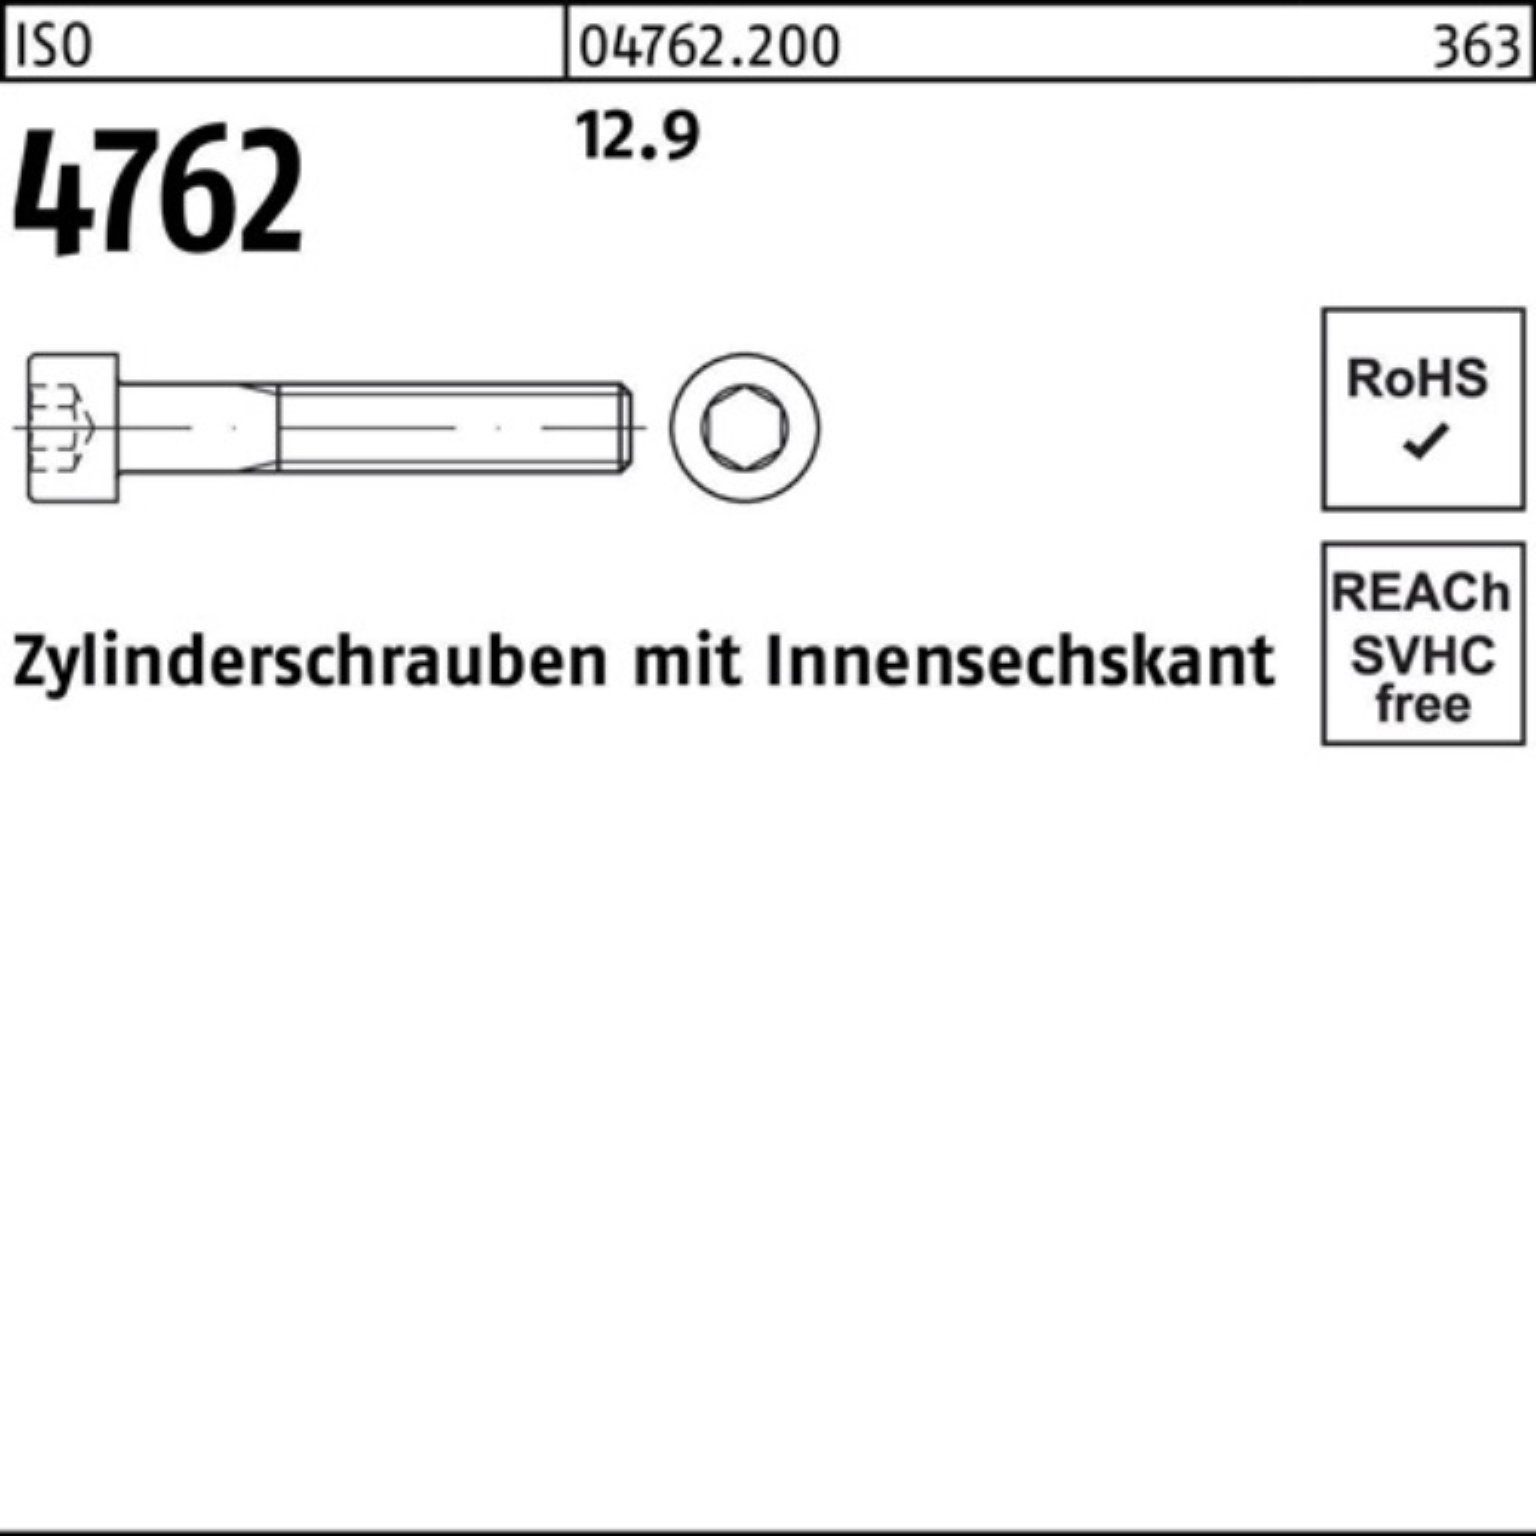 500 8 I Zylinderschraube Zylinderschraube 4762 Stück M6x 500er Reyher 12.9 ISO Pack Innen-6kt